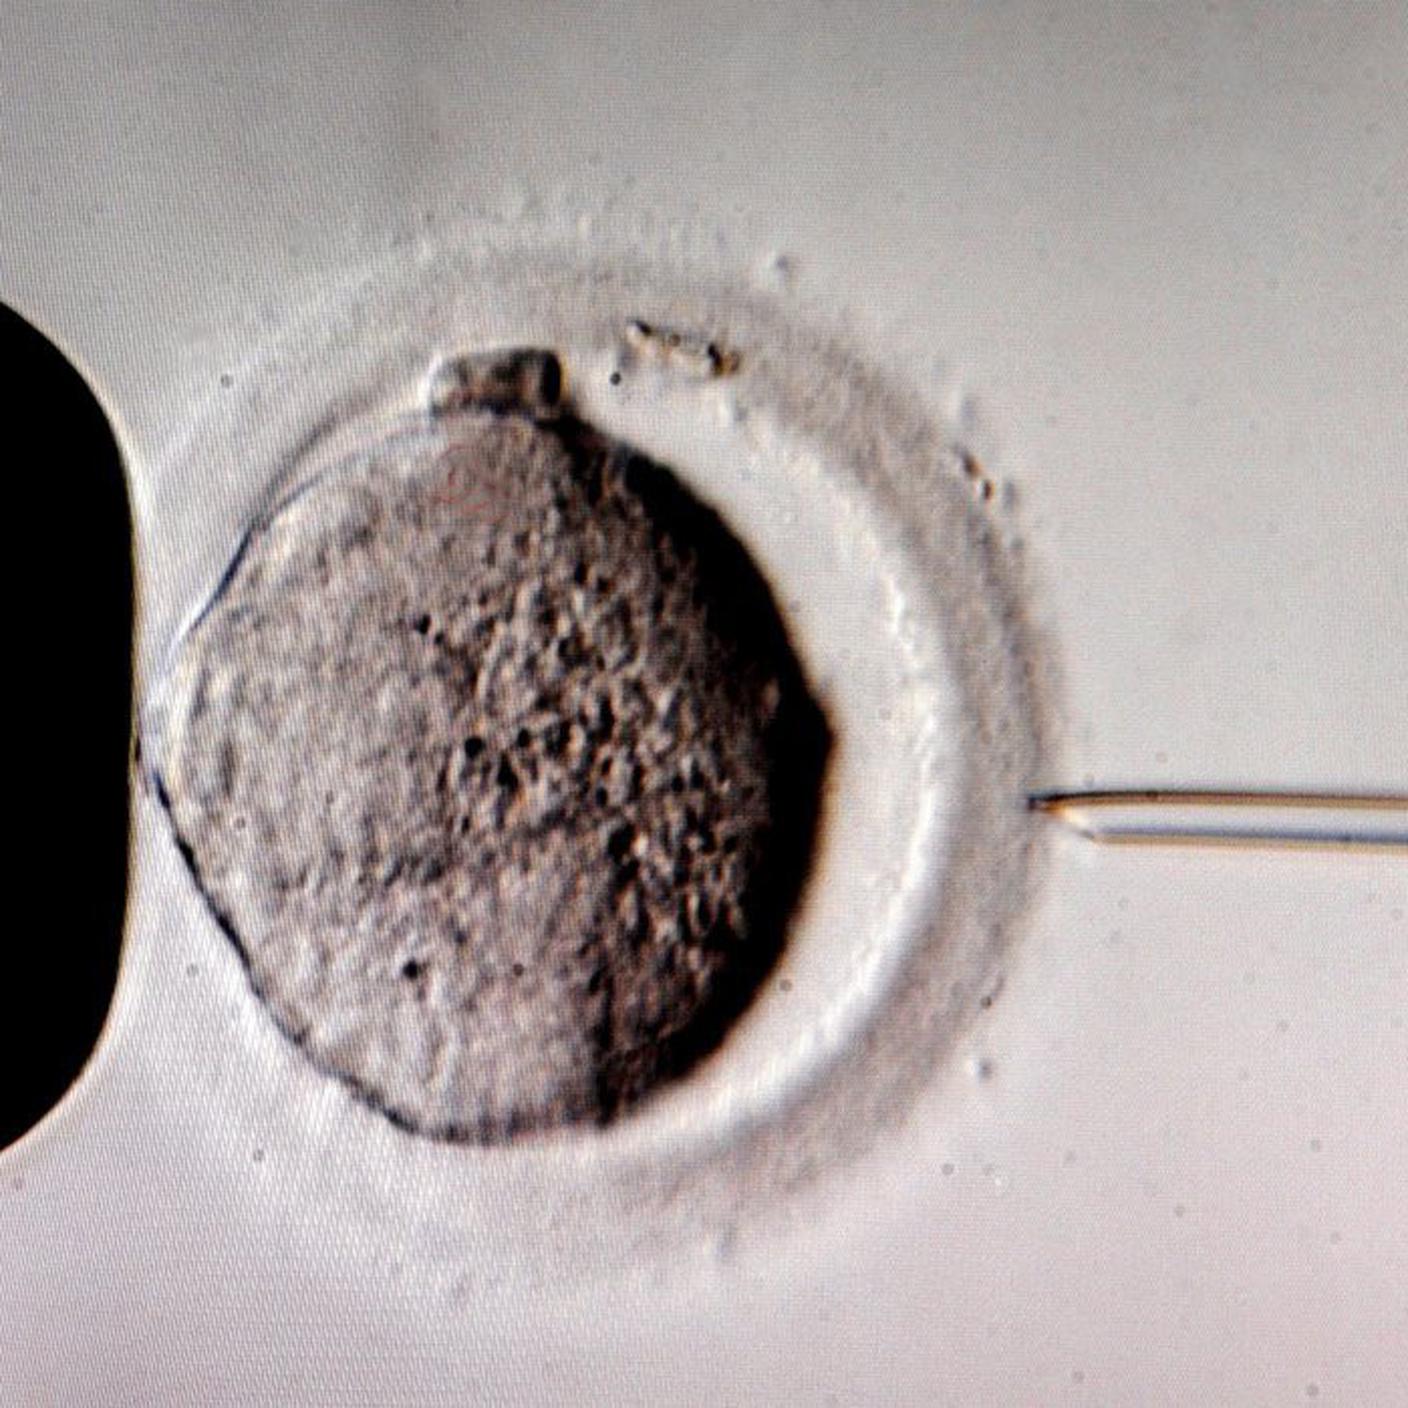 fecondazione in vitro procreazione assistita ky.JPG